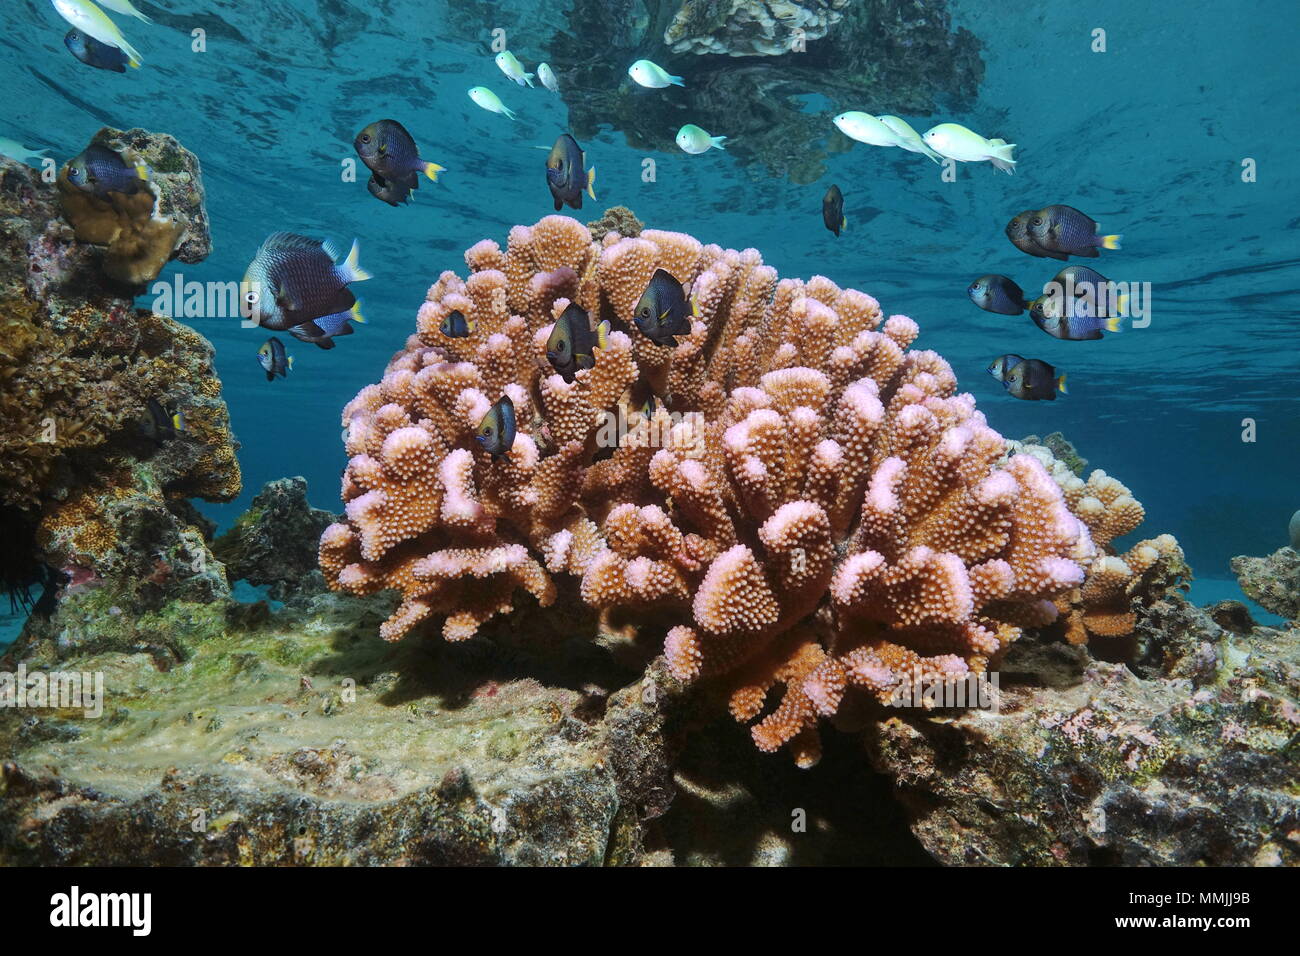 Chou-fleur rose corail avec poissons tropicaux (demoiselle) dans les eaux peu profondes, l'océan Pacifique, Polynésie française, Samoa Américaines Banque D'Images